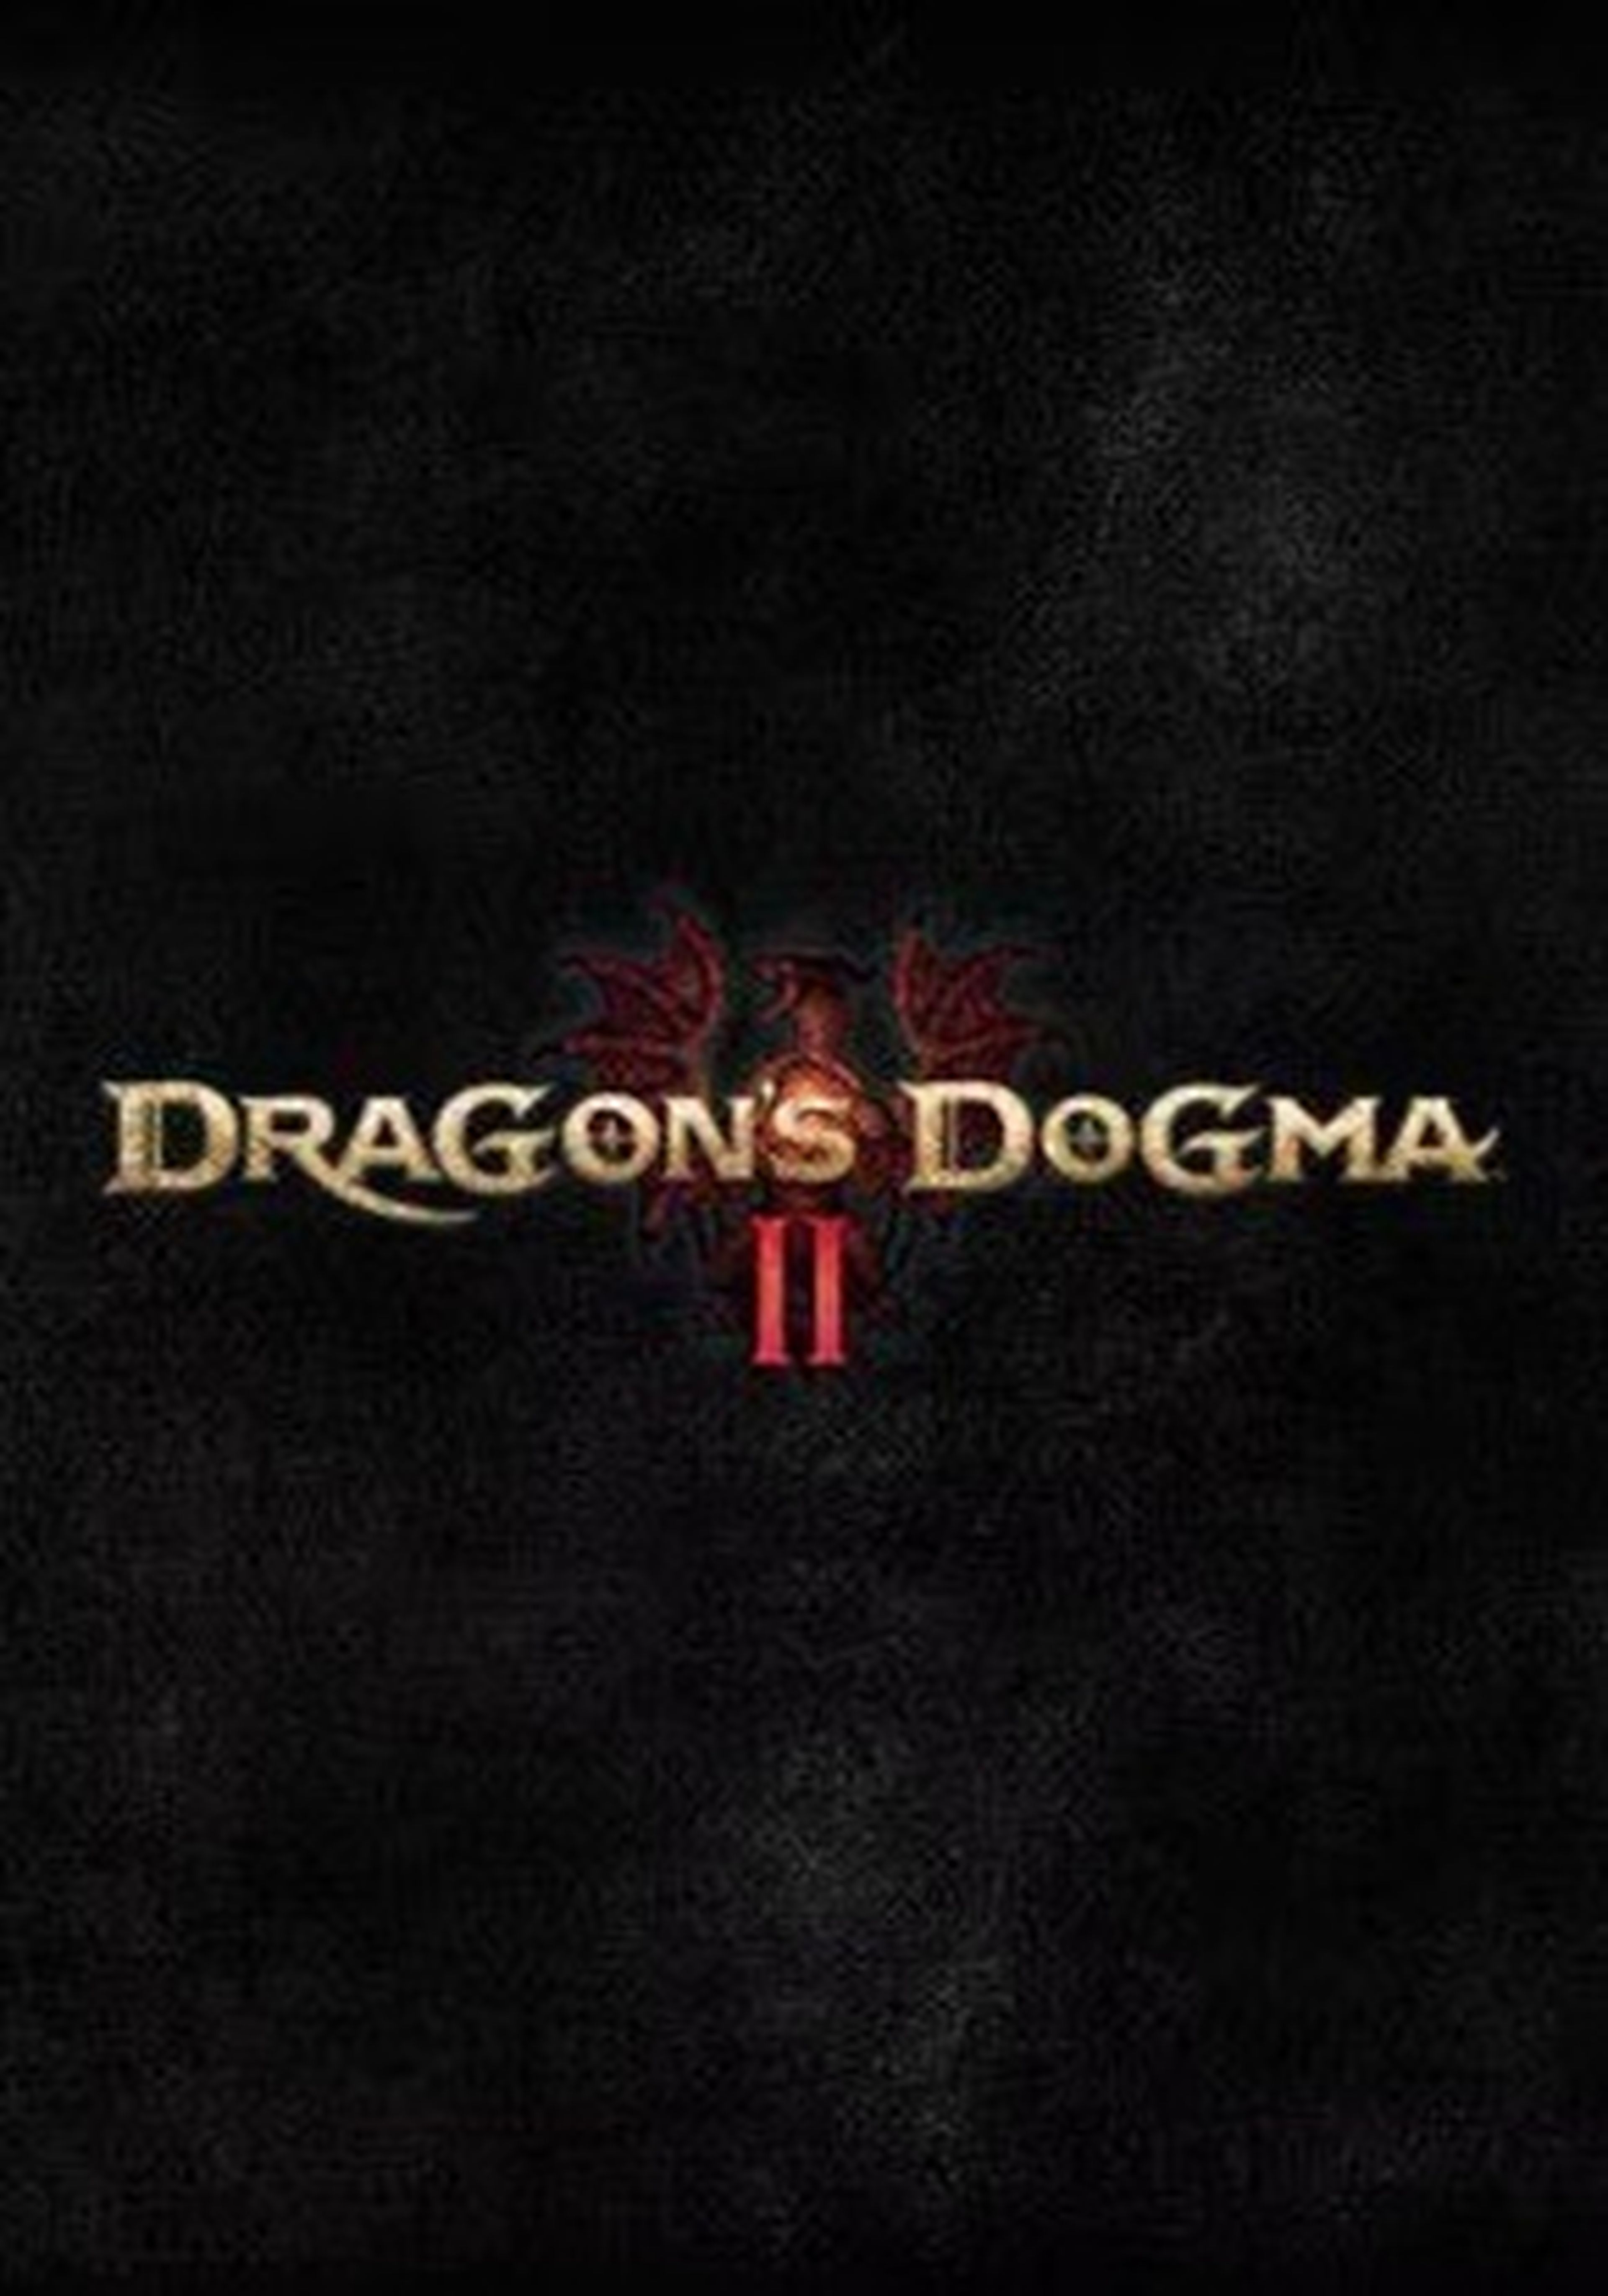 Dragons dogma 2 сфинкс загадки. Dragon's Dogma 2 Дата выхода. Dragon’s Dogma II обложка. Dragon Dogma 2 коллекционное издание. Dragons Dogma 2 logo.